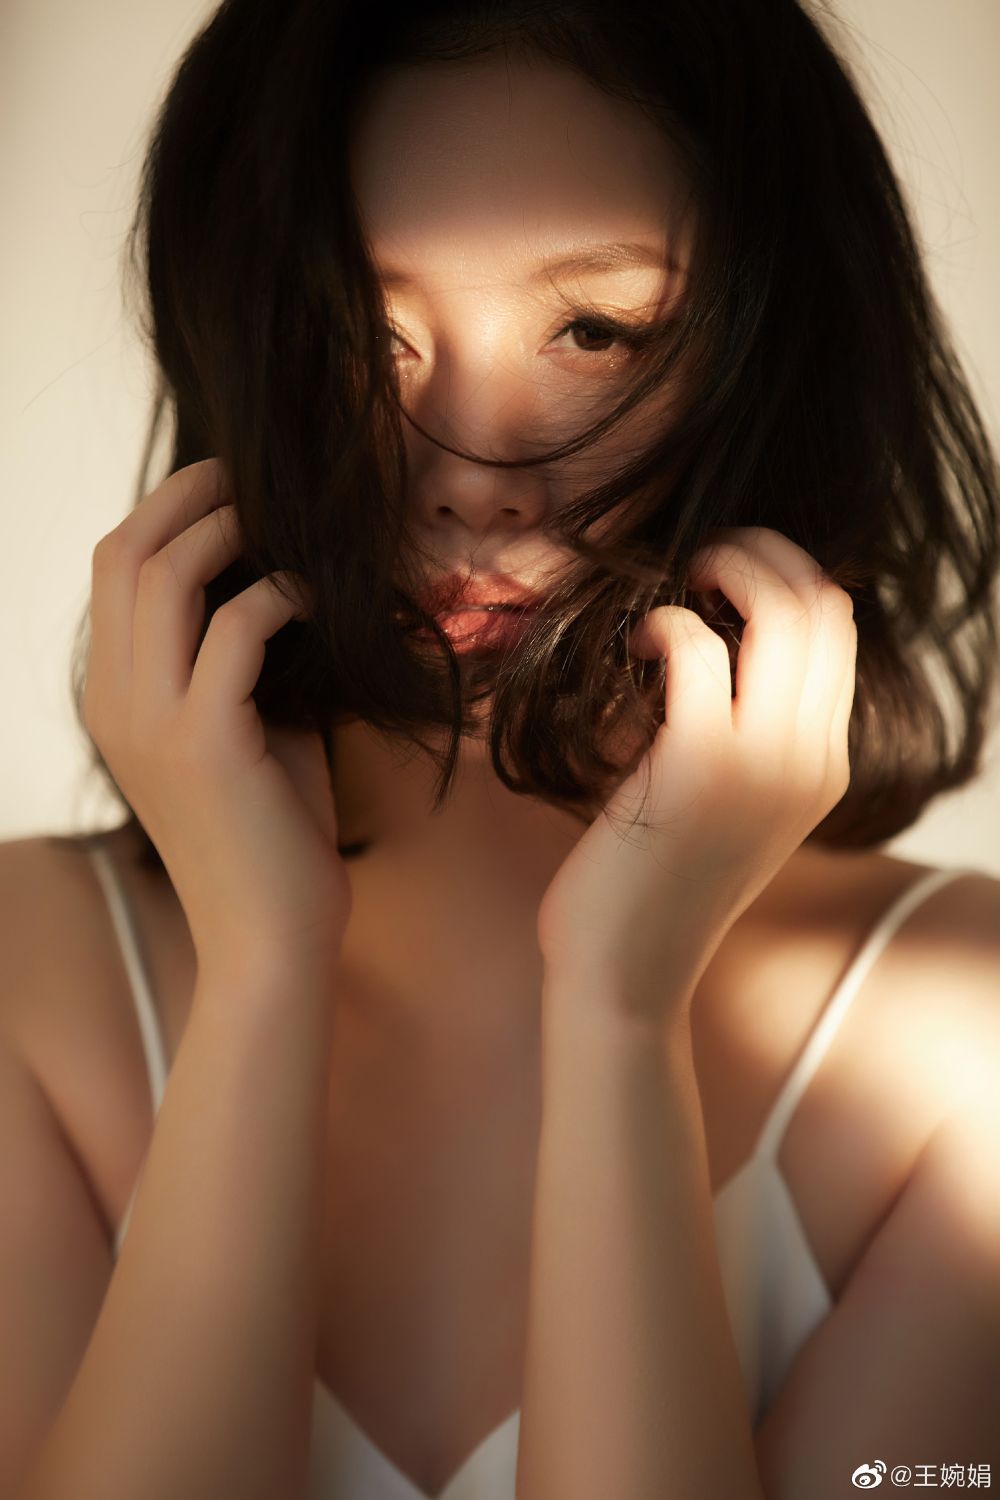 王婉娟 Sexy and Hottest Photos , Latest Pics